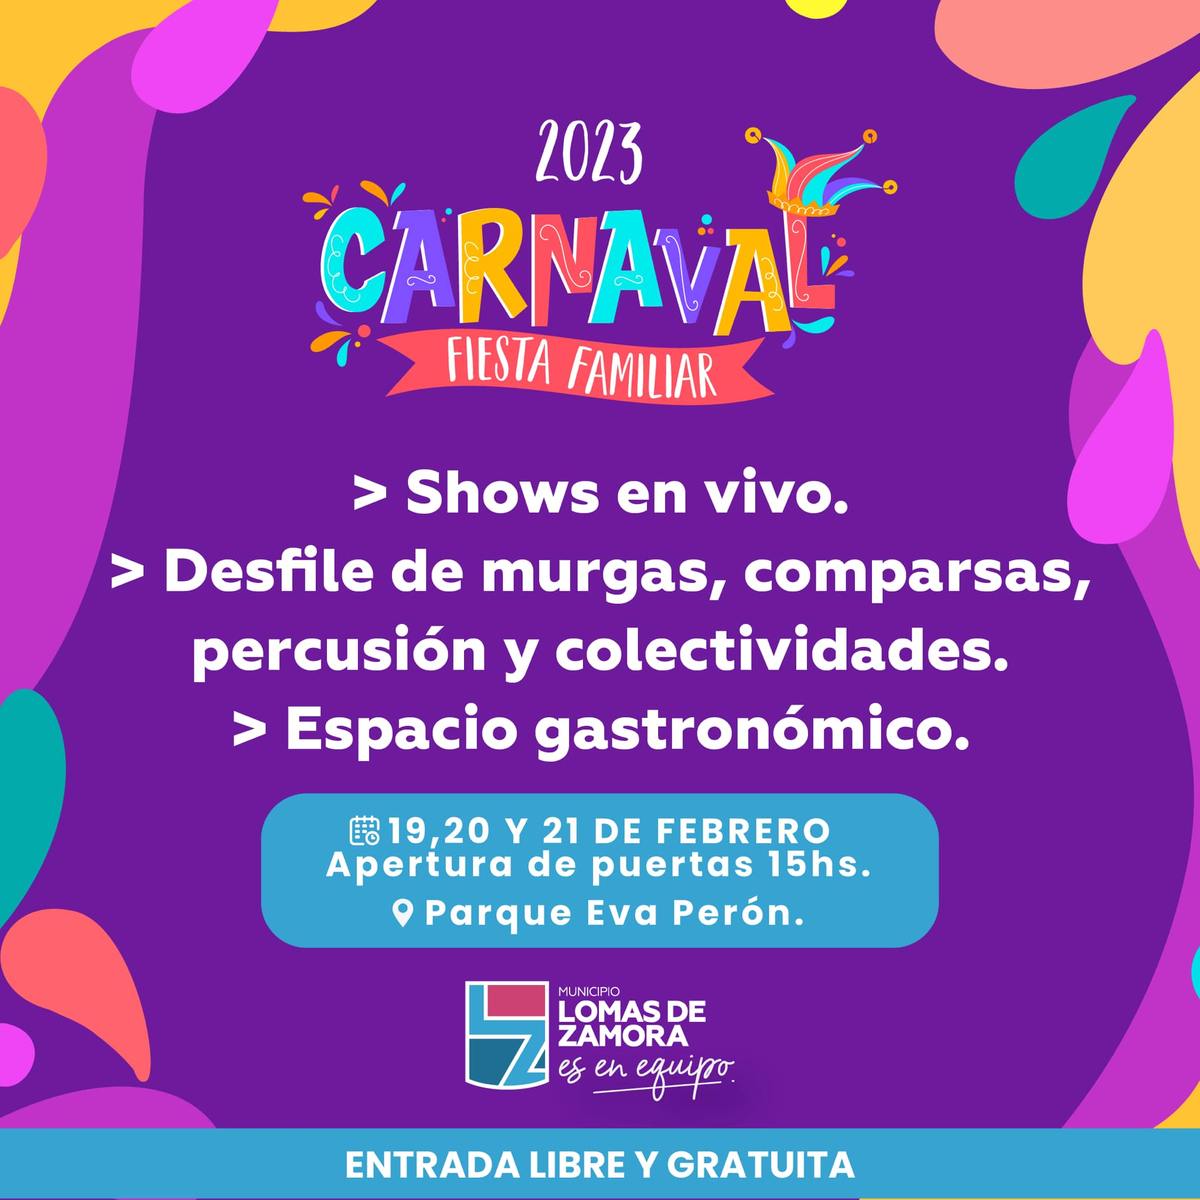 Realizarán tres jornadas de festejo por carnaval en Lomas. 